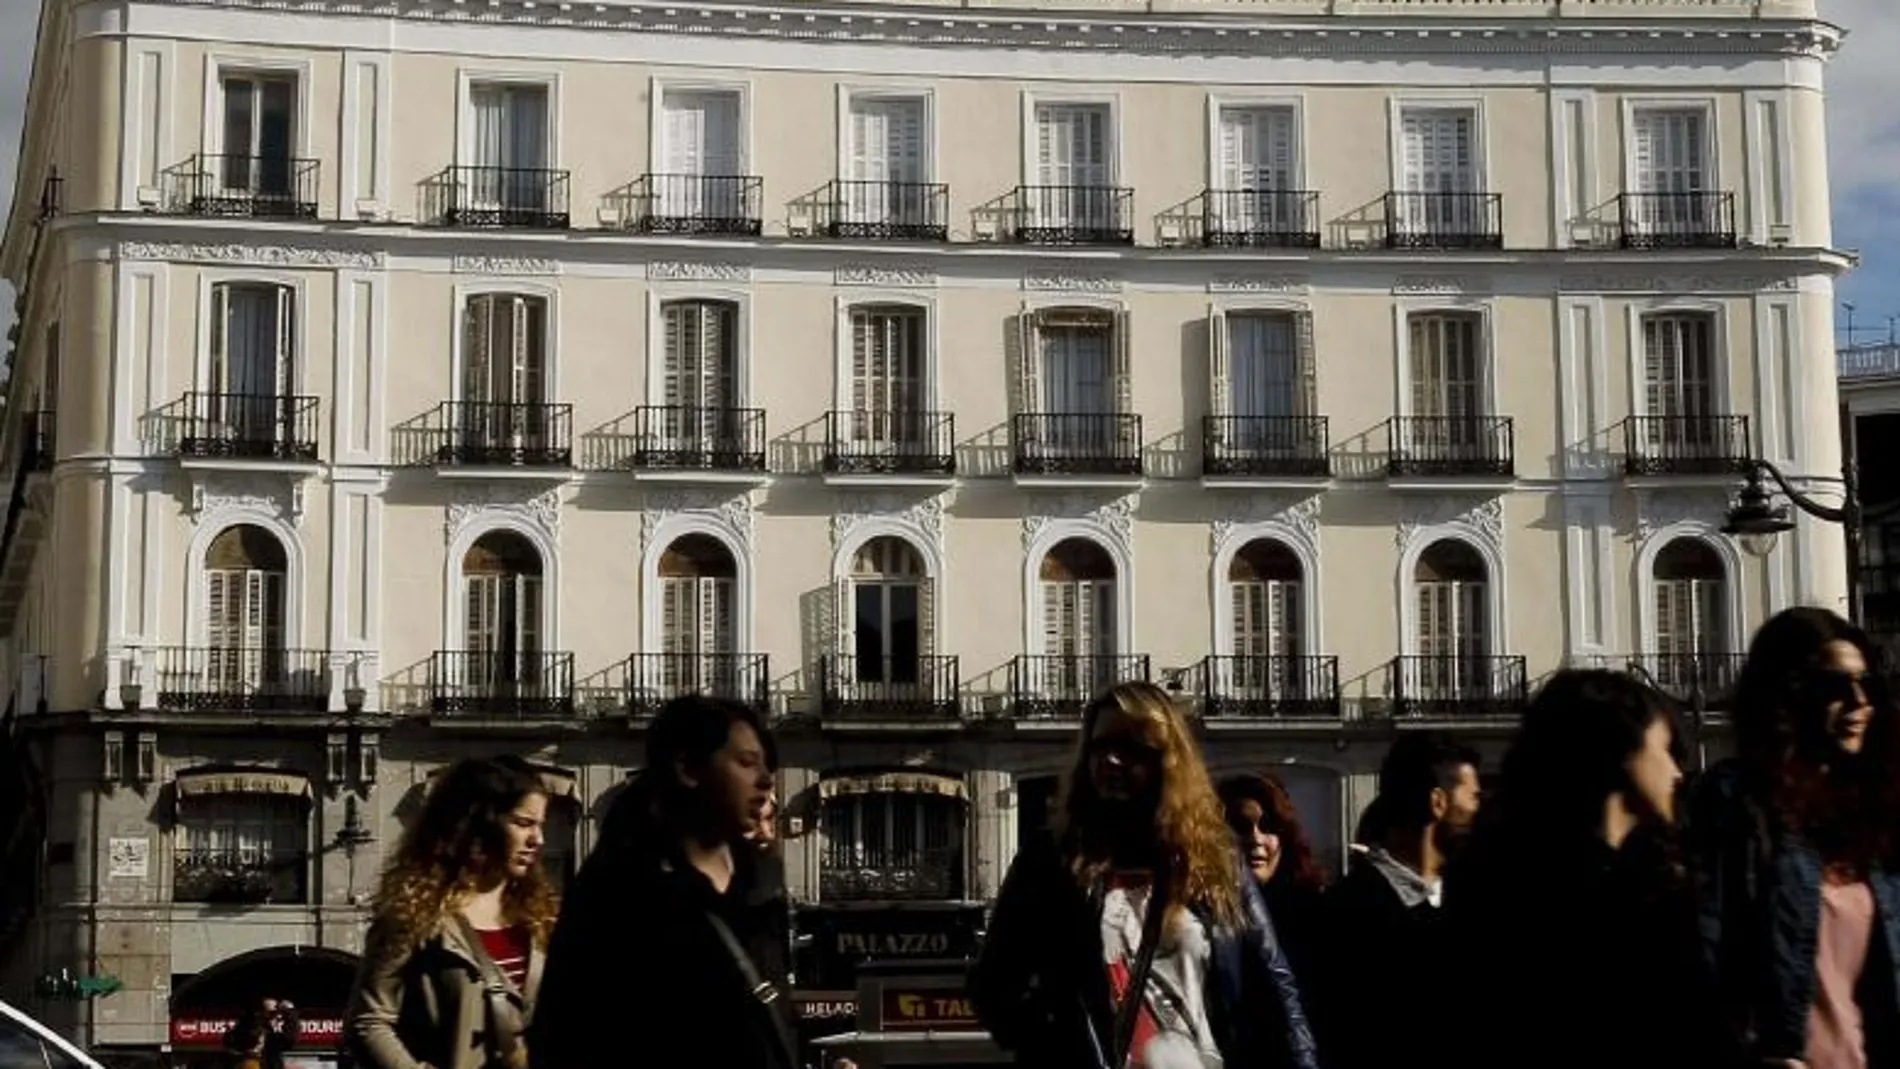 Vista de la madrileña Puerta del Sol con el cartel de Tío Pepe que se ha instalado en una nueva localización, frente a la Real Casa de Correos